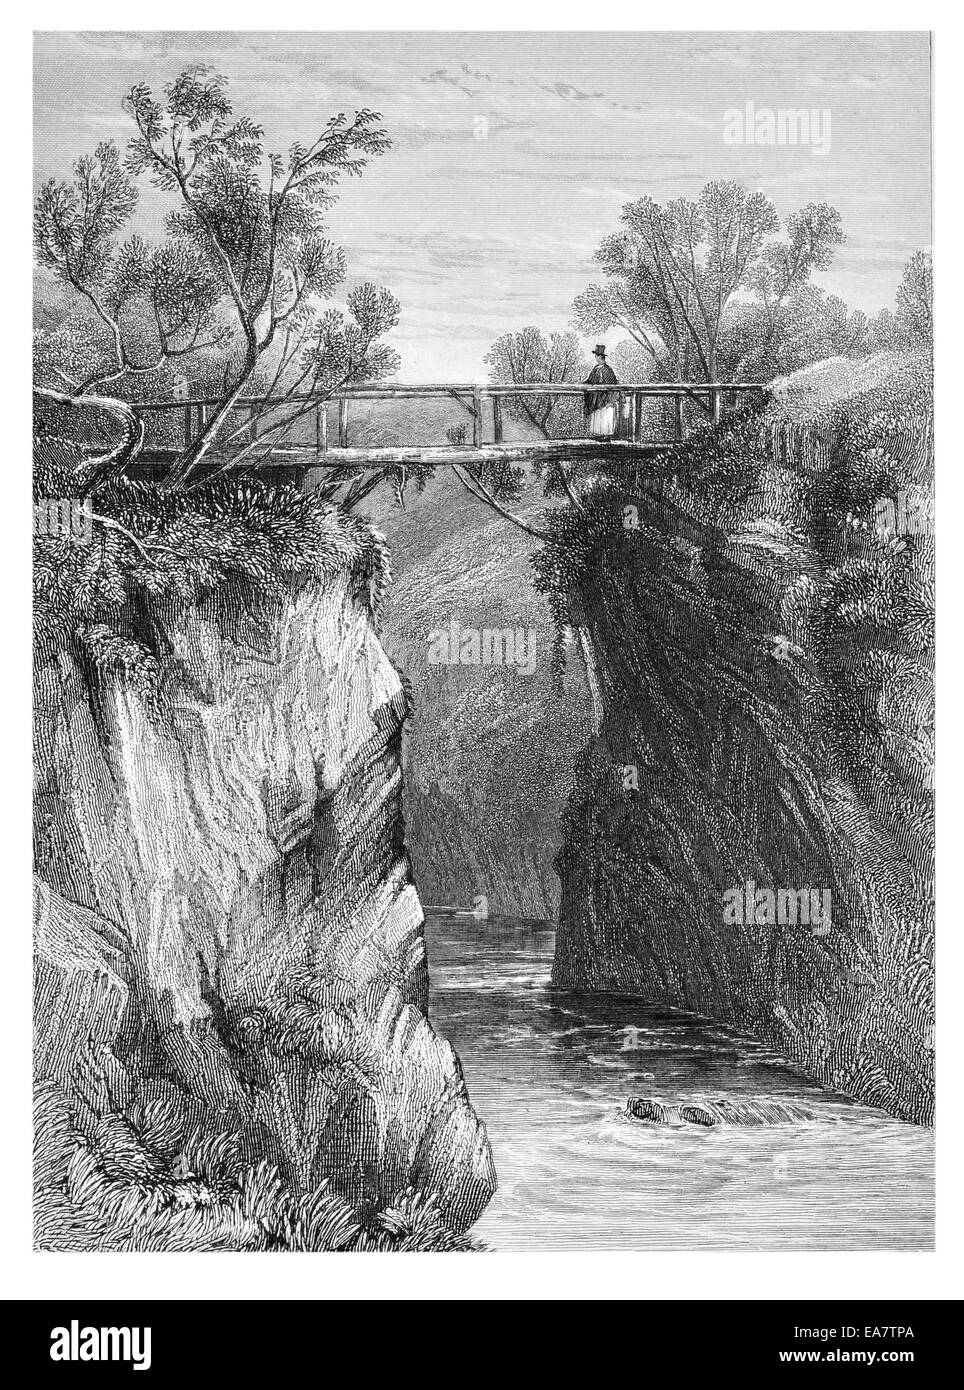 Sur la rivière Afon Mawddach près du Gwynedd, Pays de Galles Snowdonia cataracte vers 1830 Banque D'Images